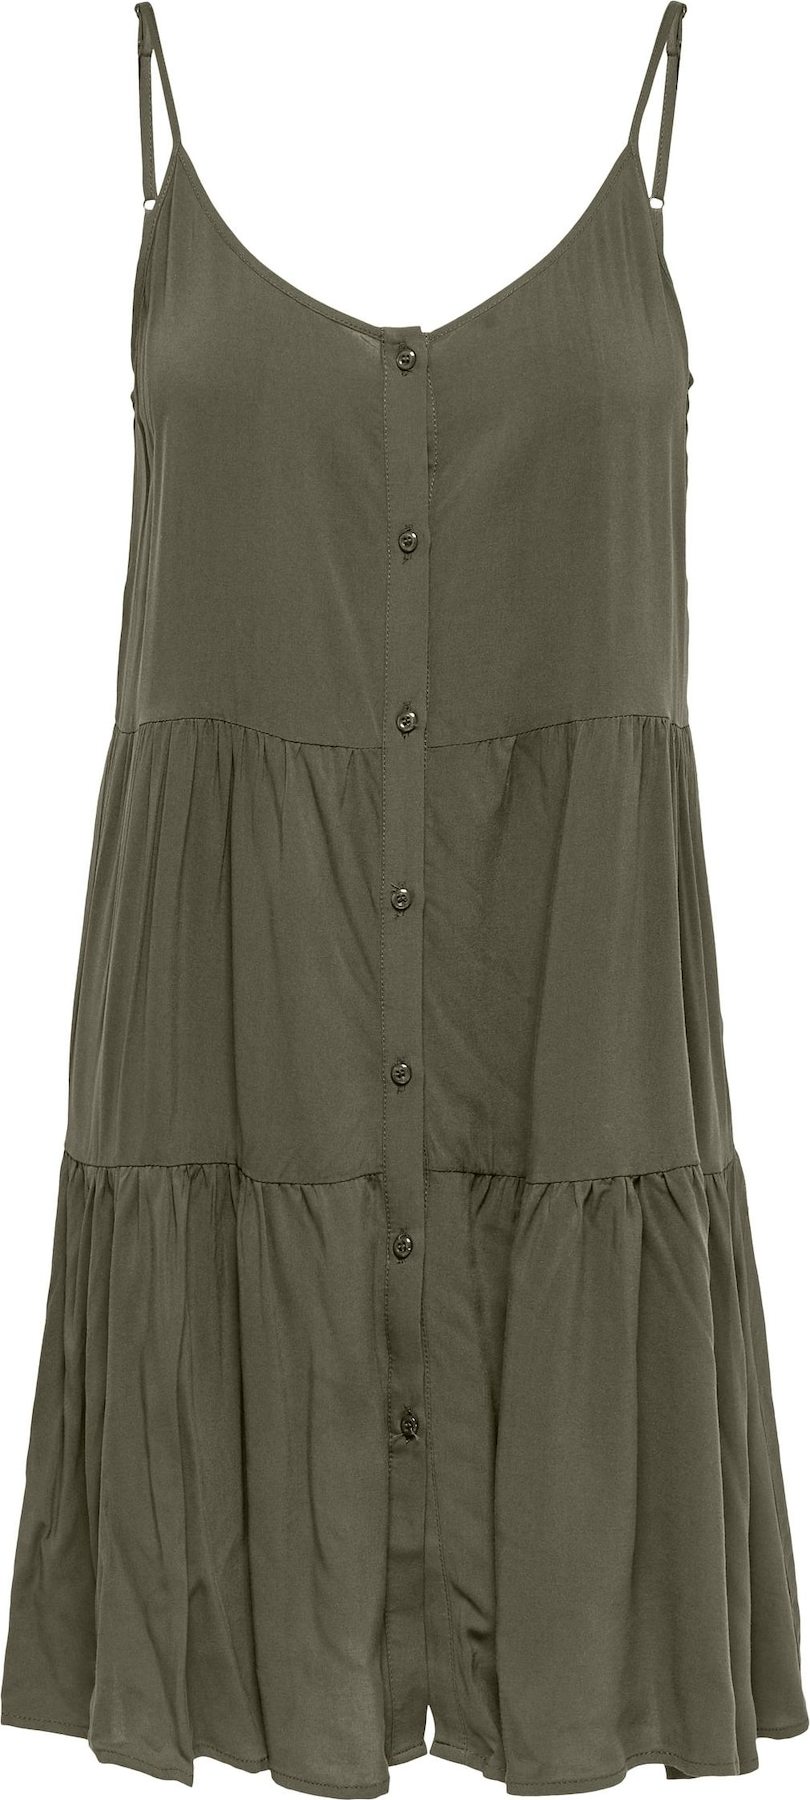 Letní šaty 'YANA' Only olivová